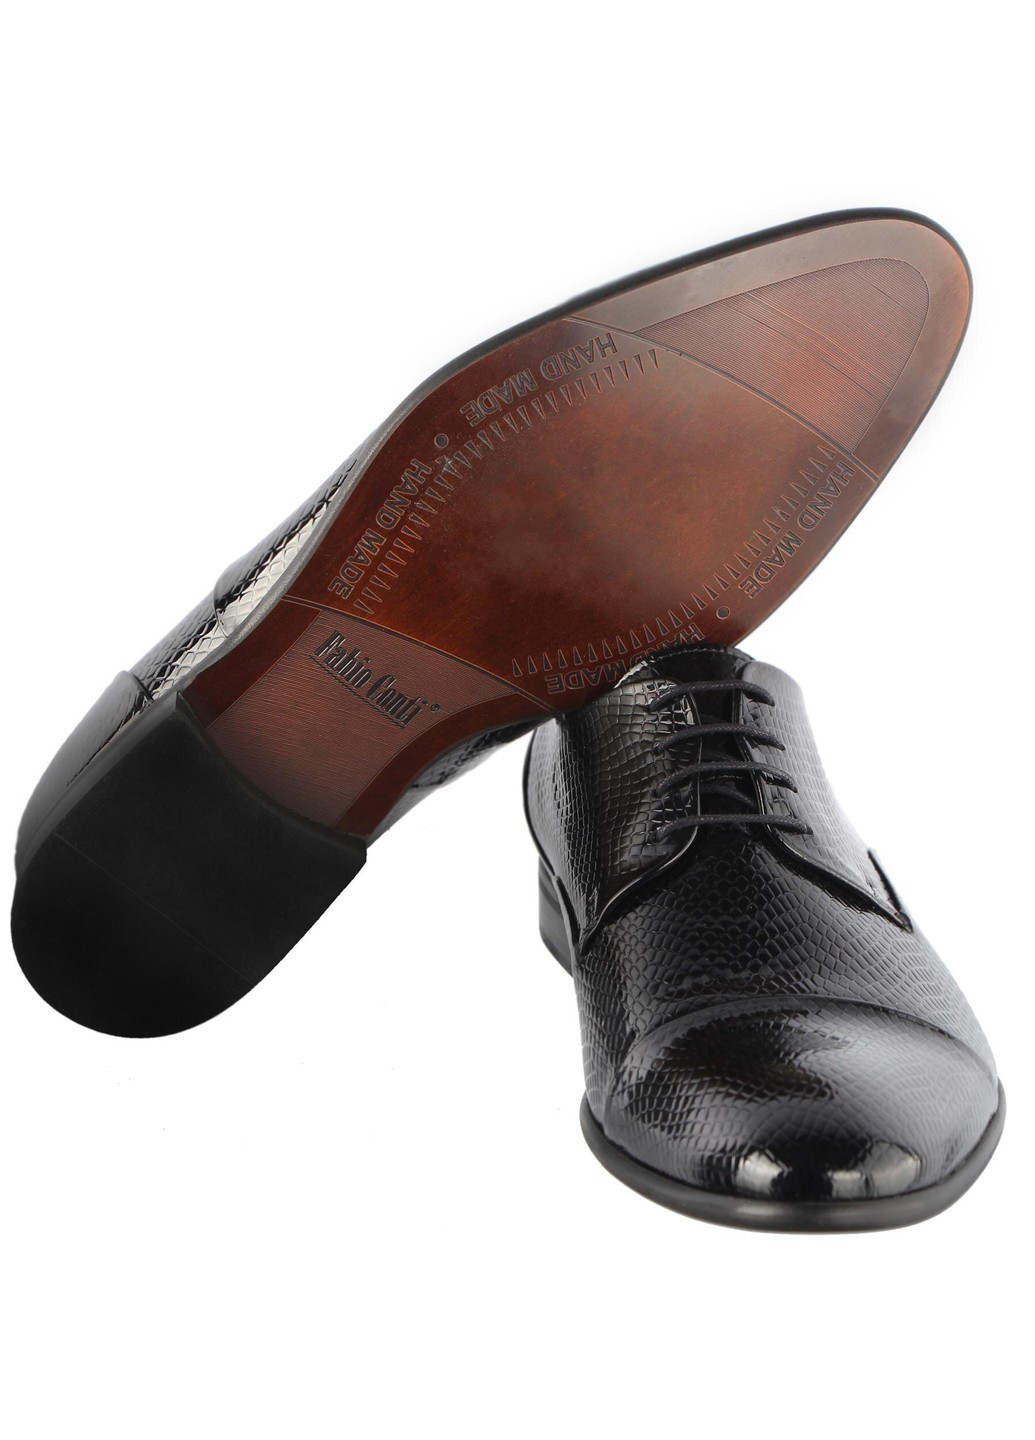 Черные мужские классические туфли 5780 Conhpol на шнурках